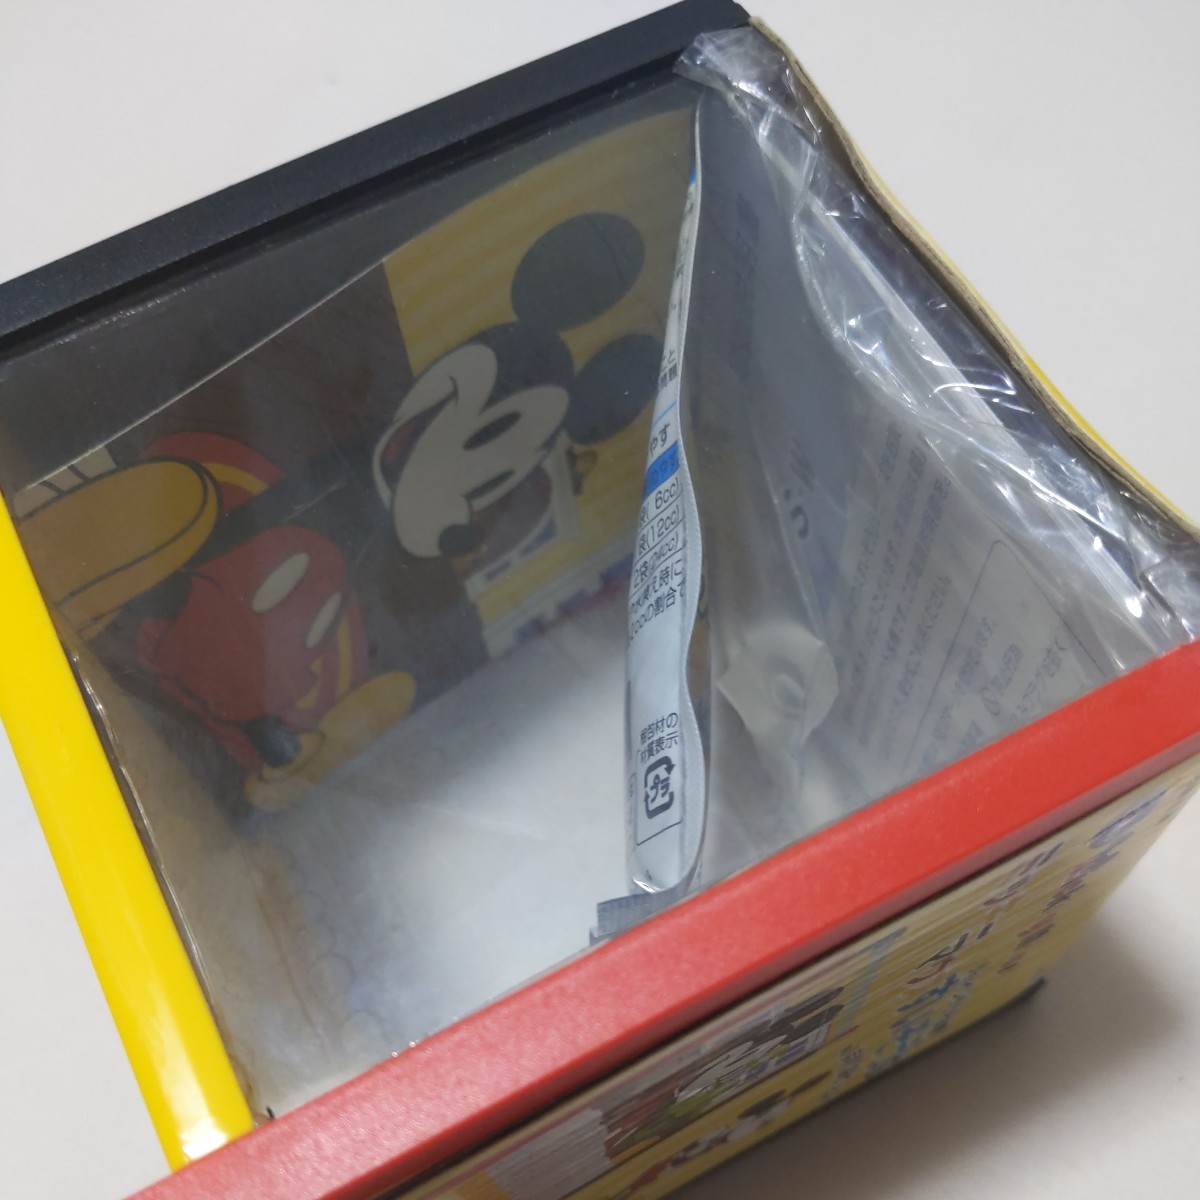 * маленький интерьер аквариум Mickey Mouse .. похоже S*3 шт. комплект не использовался товар 